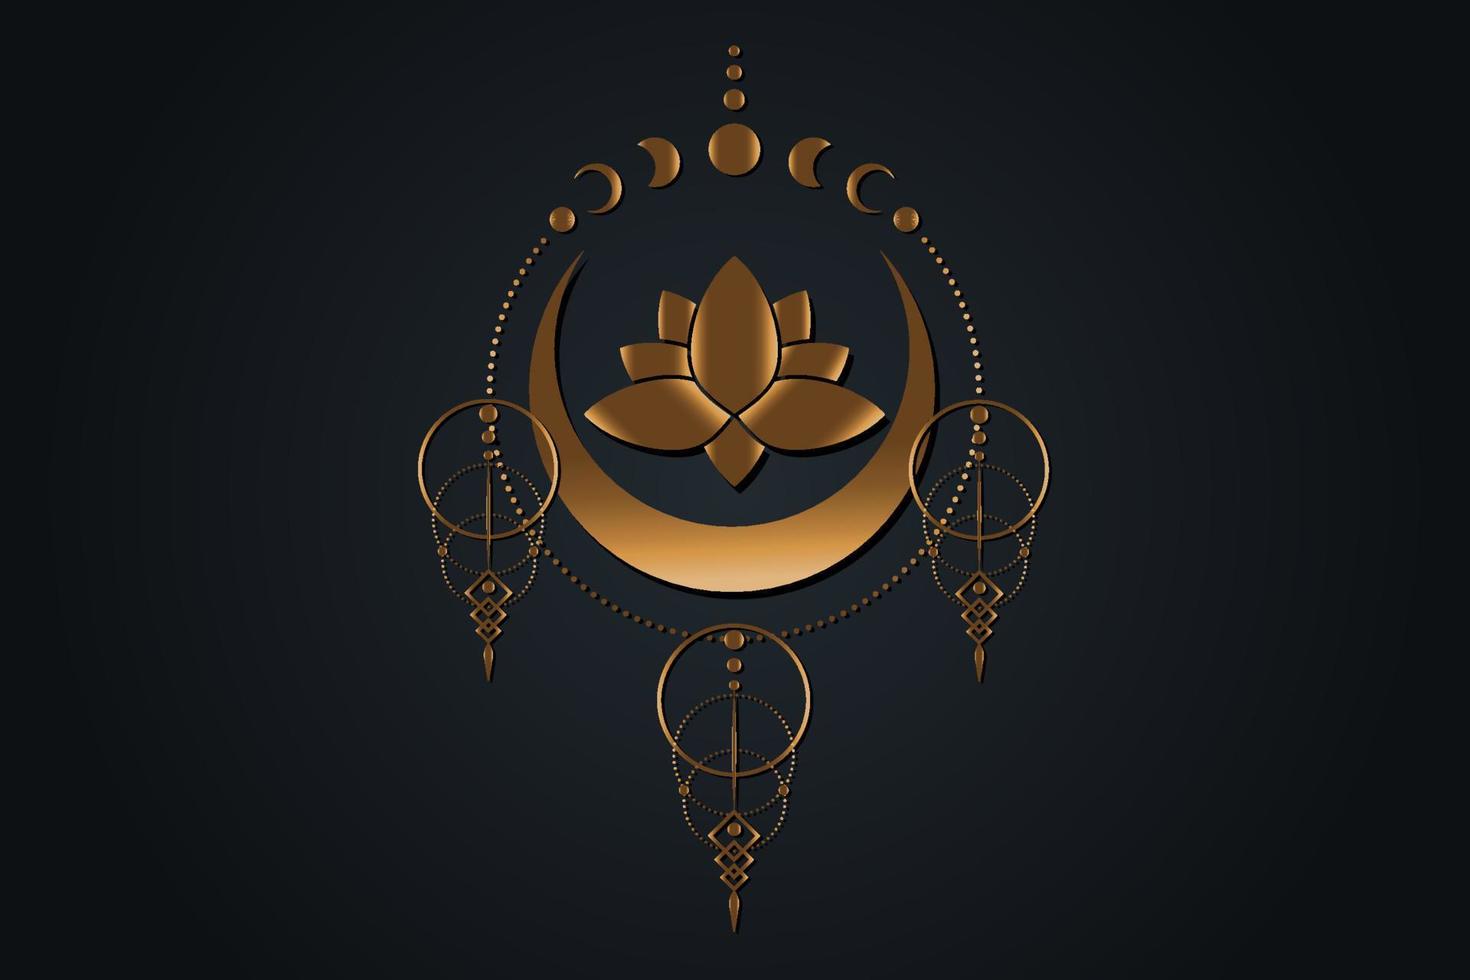 flor de loto de oro y luna, geometría sagrada, símbolo de la diosa wicca pagana de media luna. Fases de la luna antiguo signo de banner wicca dorado, círculo de energía, vector de estilo boho aislado sobre fondo negro